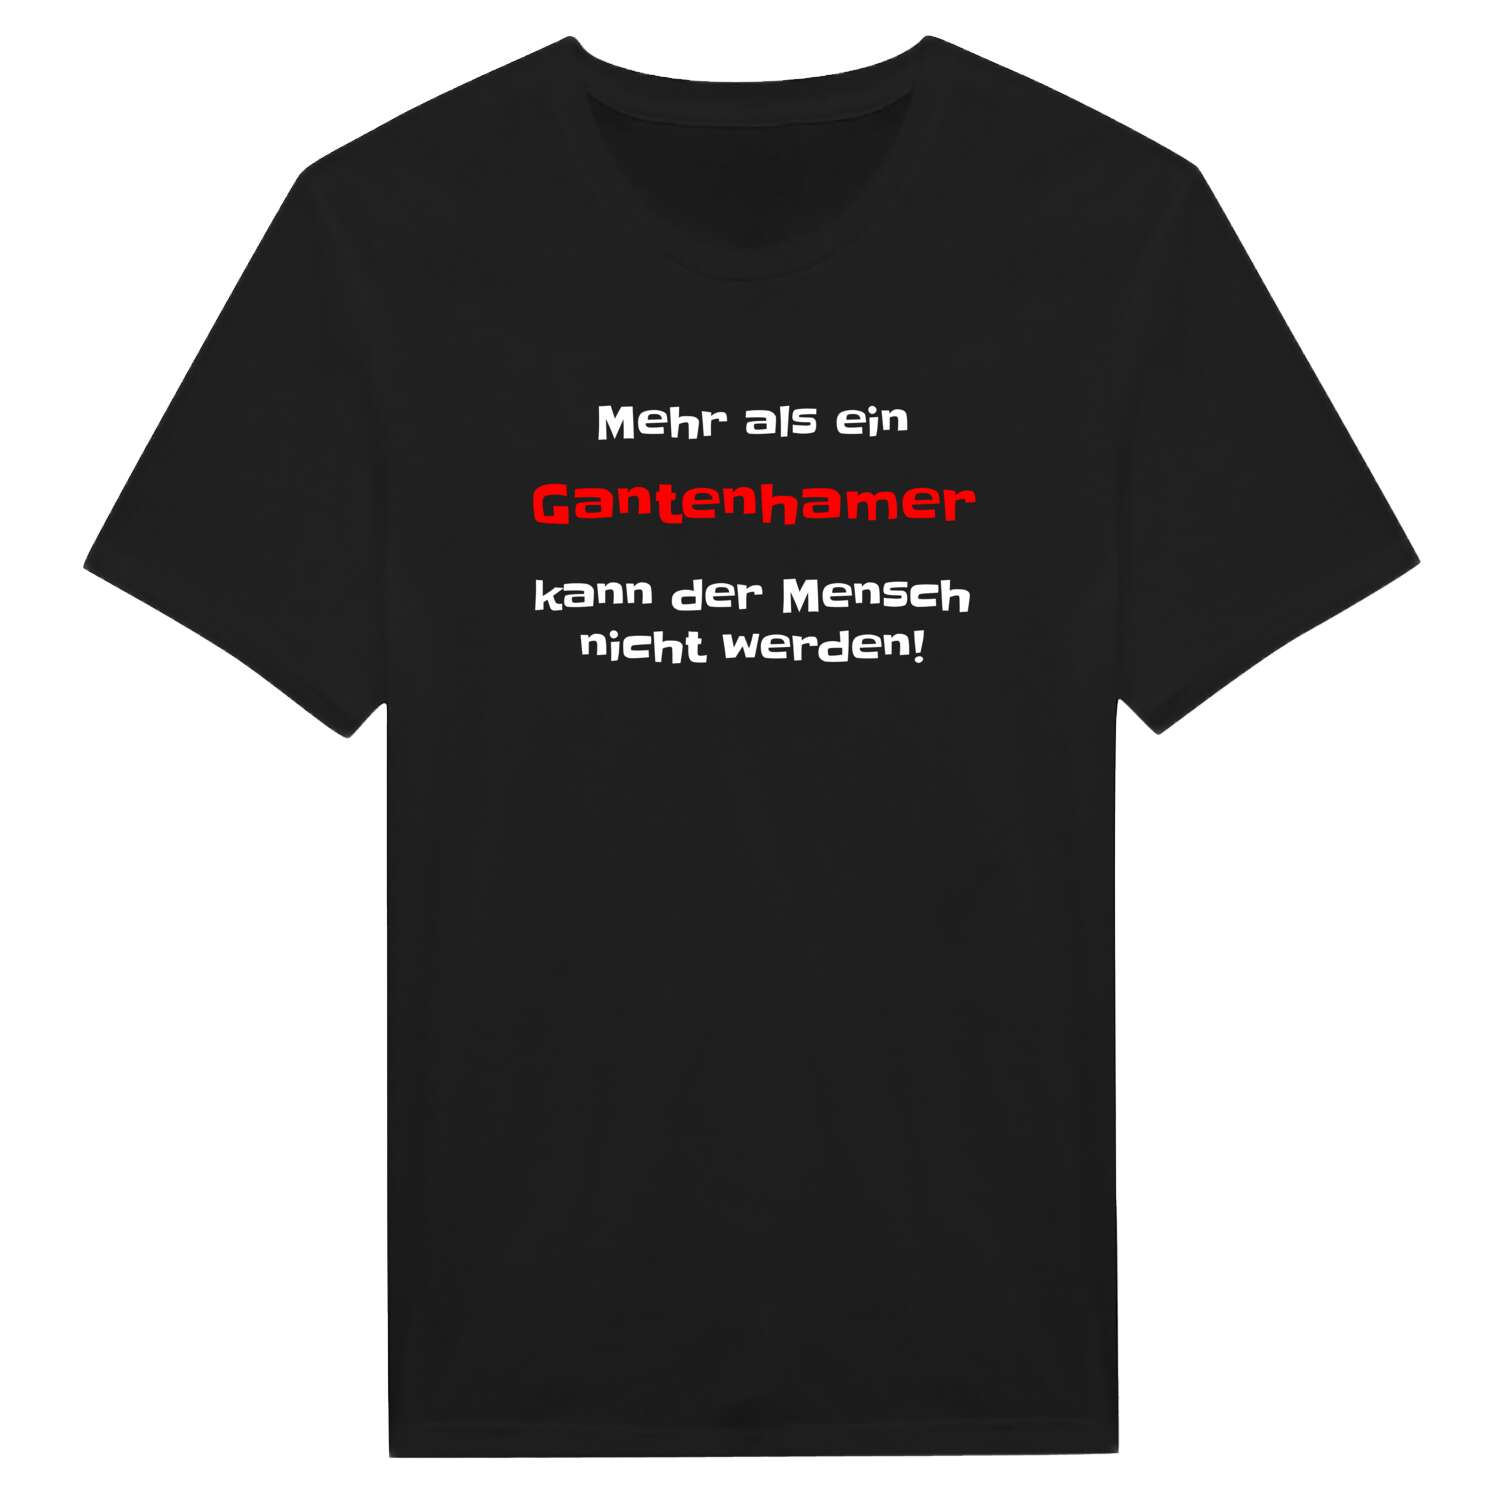 Gantenham T-Shirt »Mehr als ein«